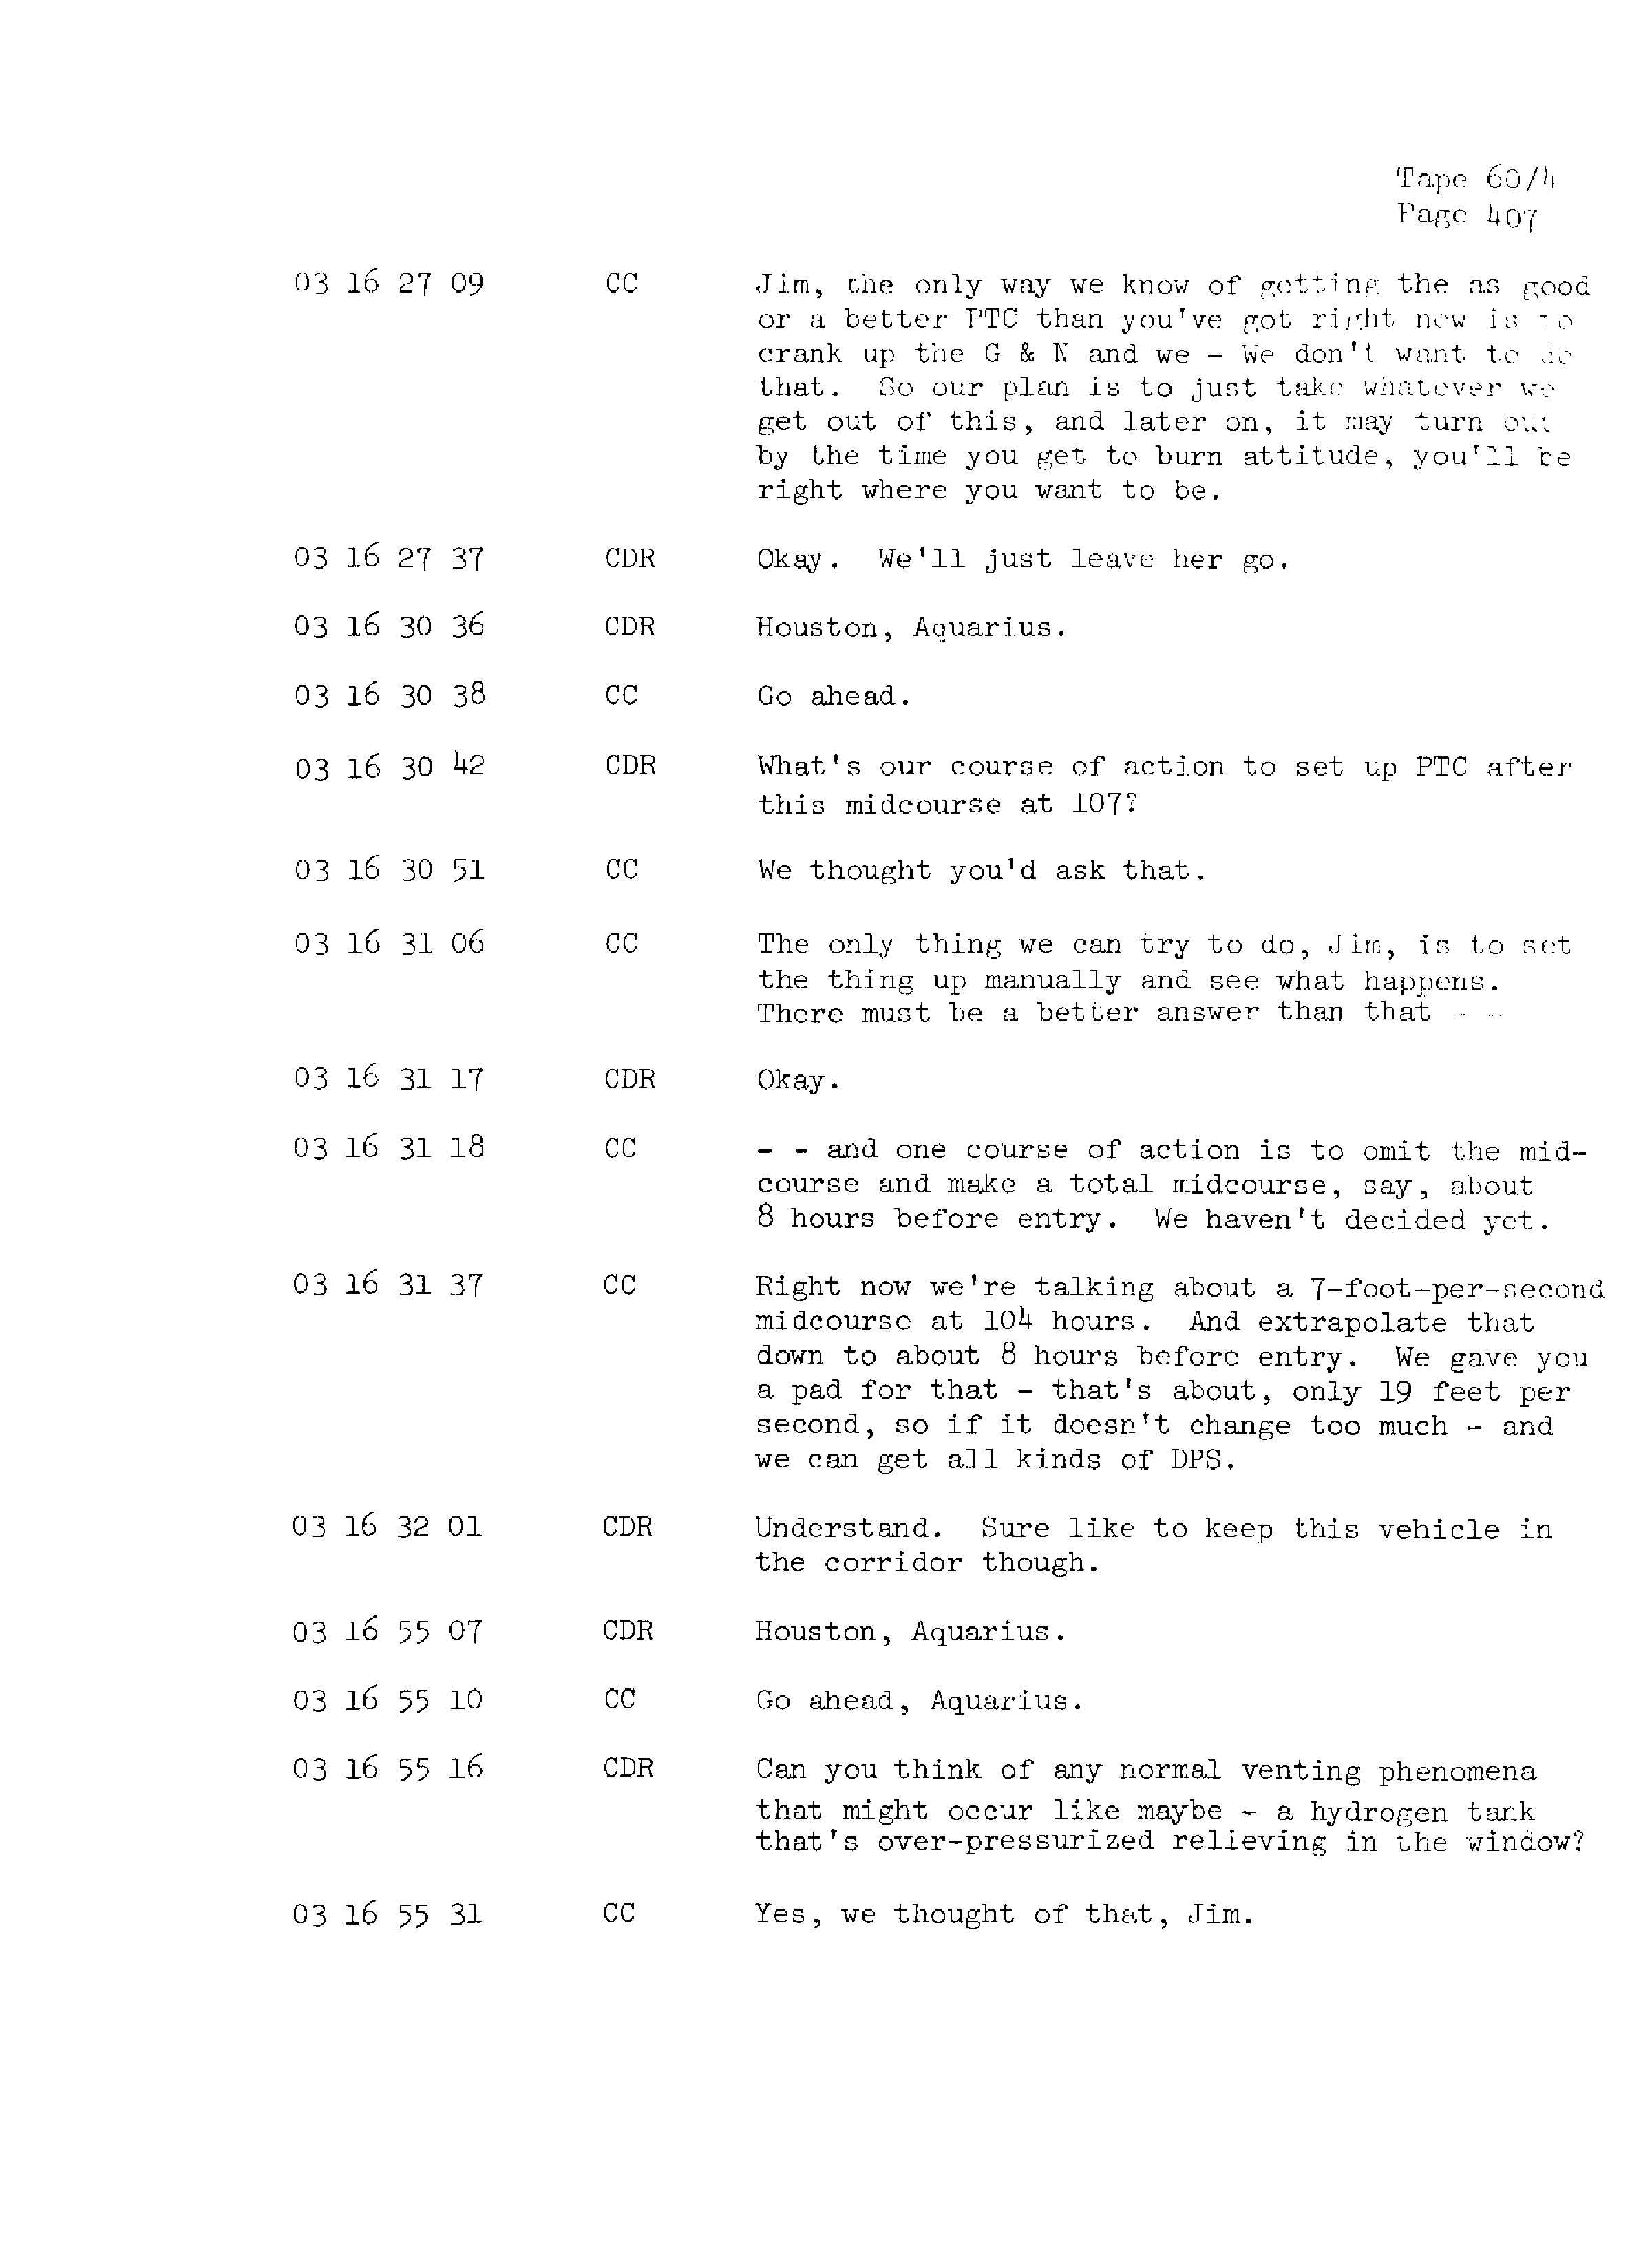 Page 414 of Apollo 13’s original transcript